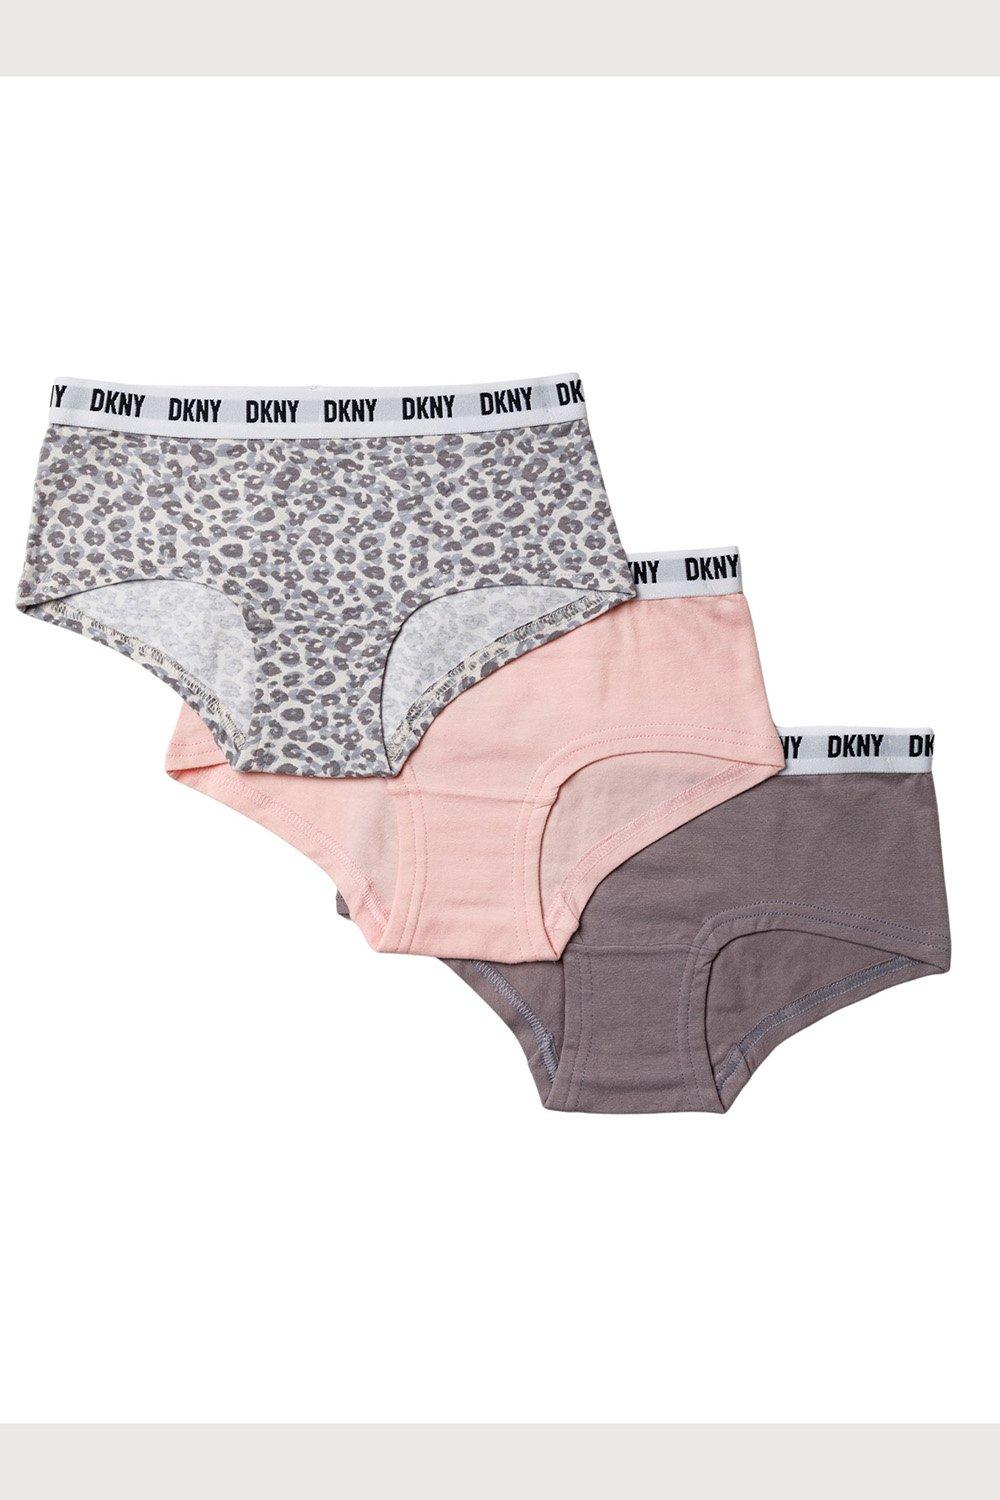 Underwear & Socks, Girls 3 Pack Knickers Set Hipster Briefs Kids Teens  Pink Grey Underwear Age 6-14 years